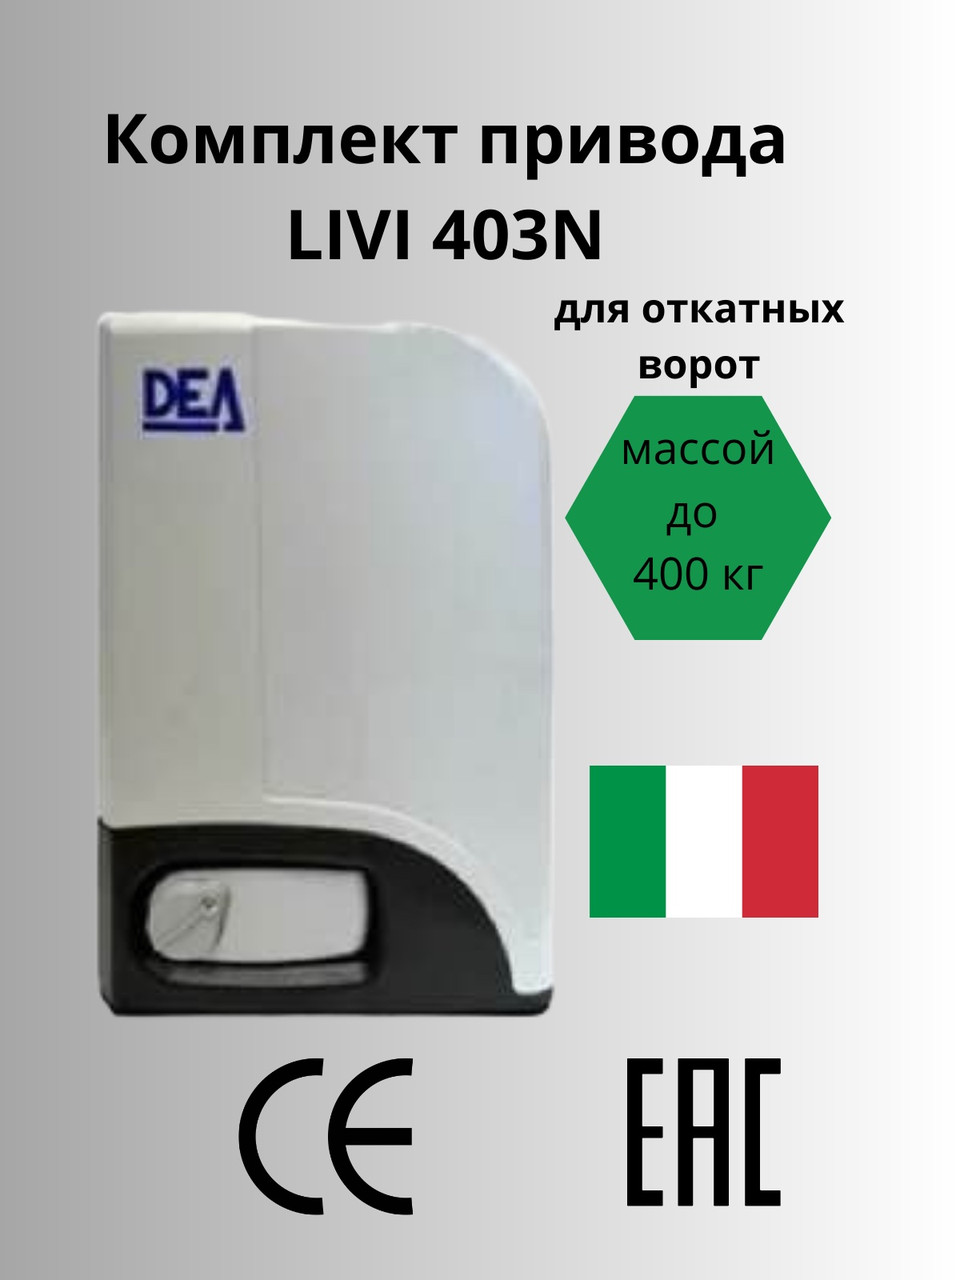 Комплект привода Livi 403N